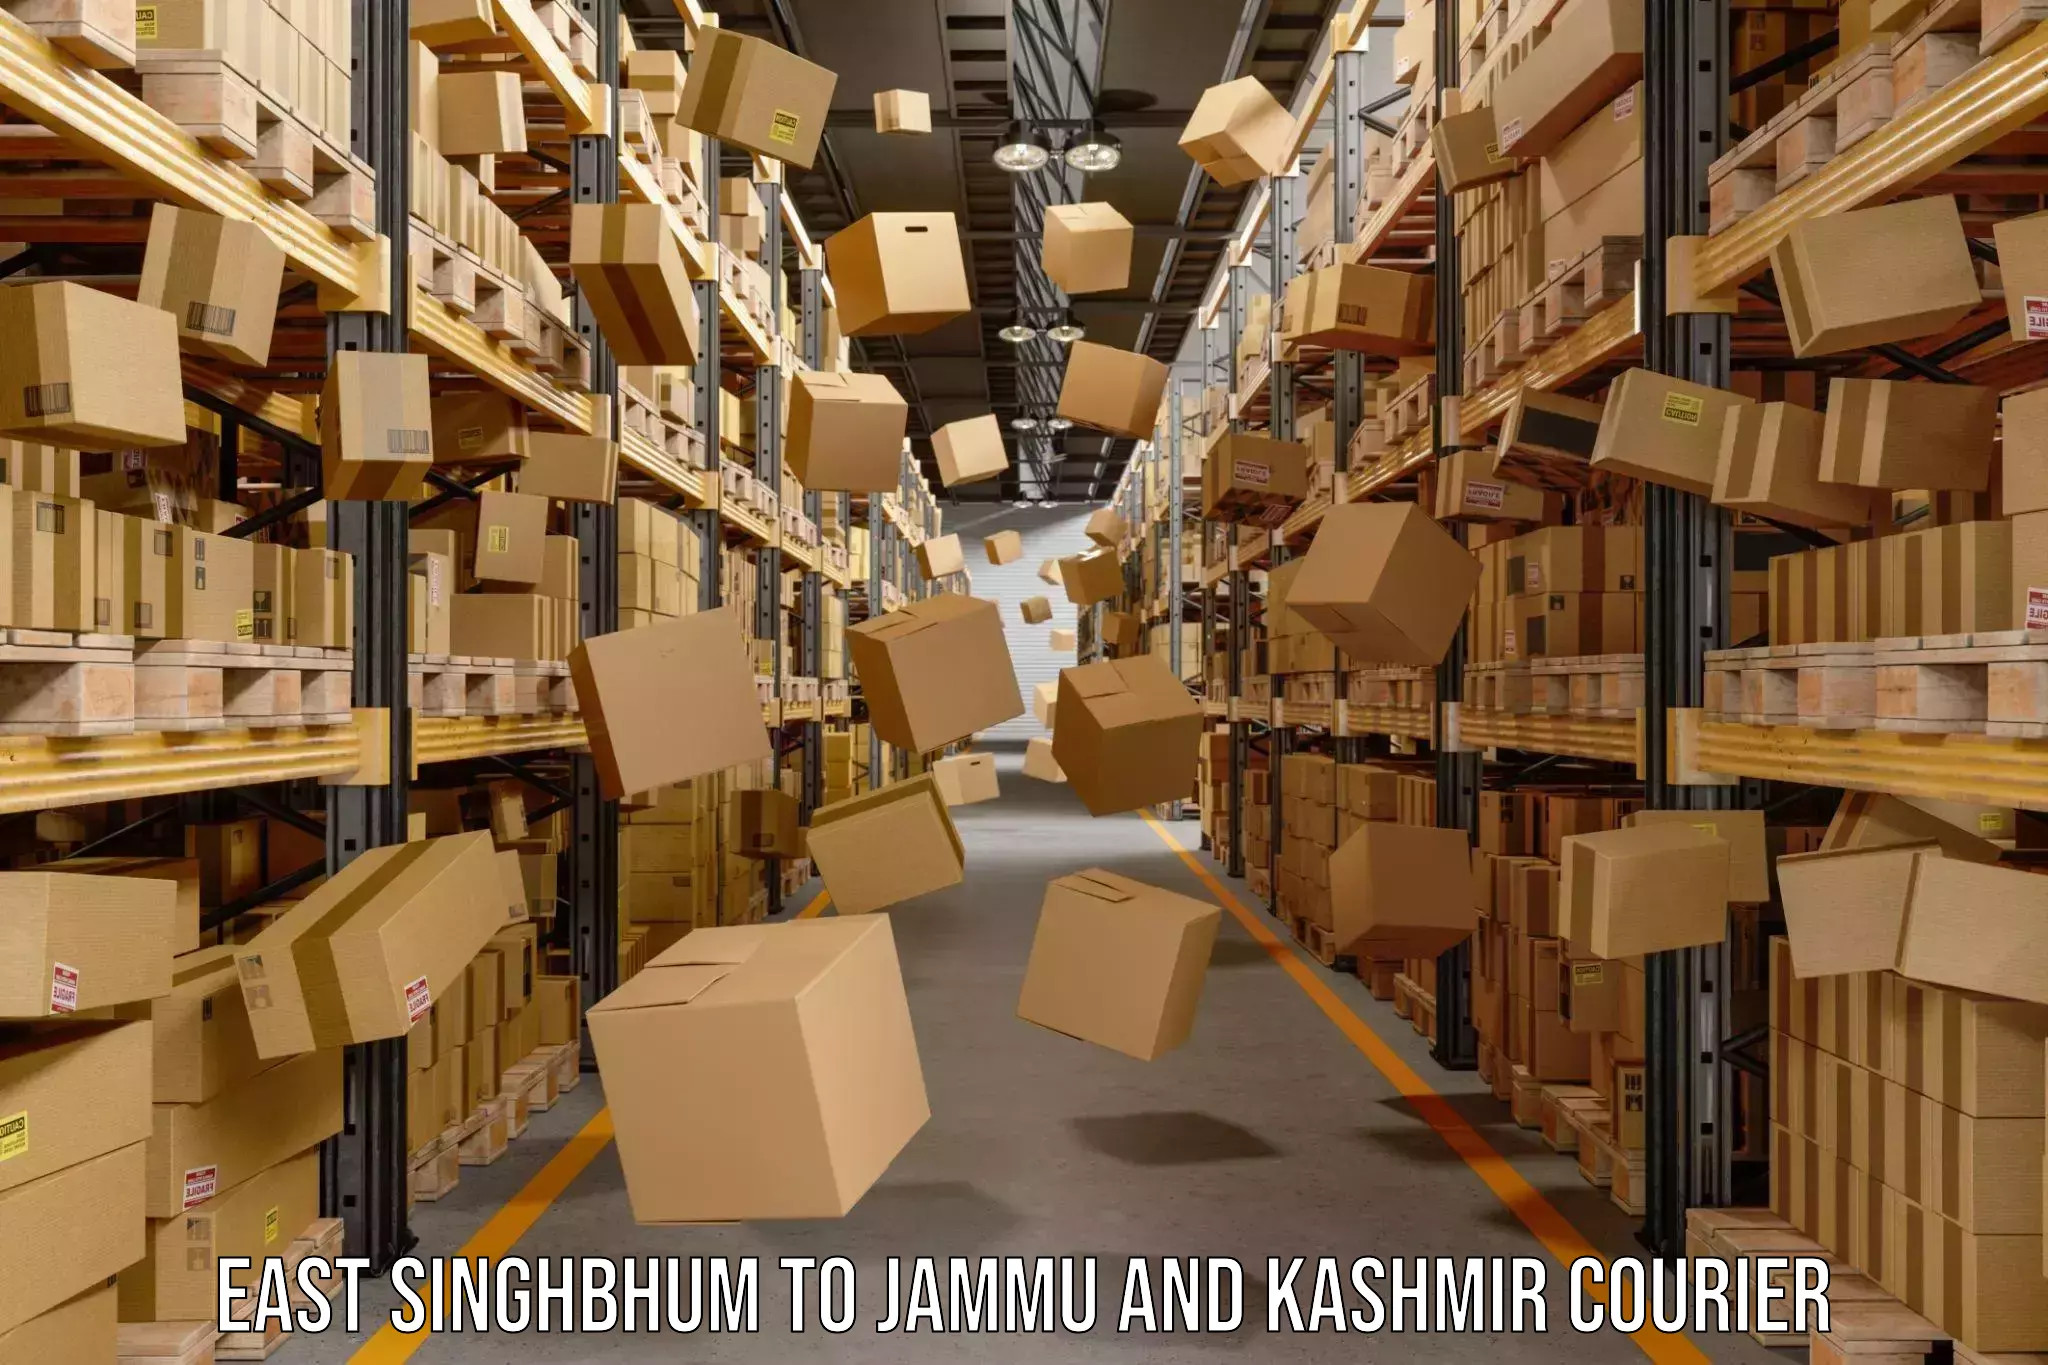 Door-to-door freight service East Singhbhum to IIT Jammu